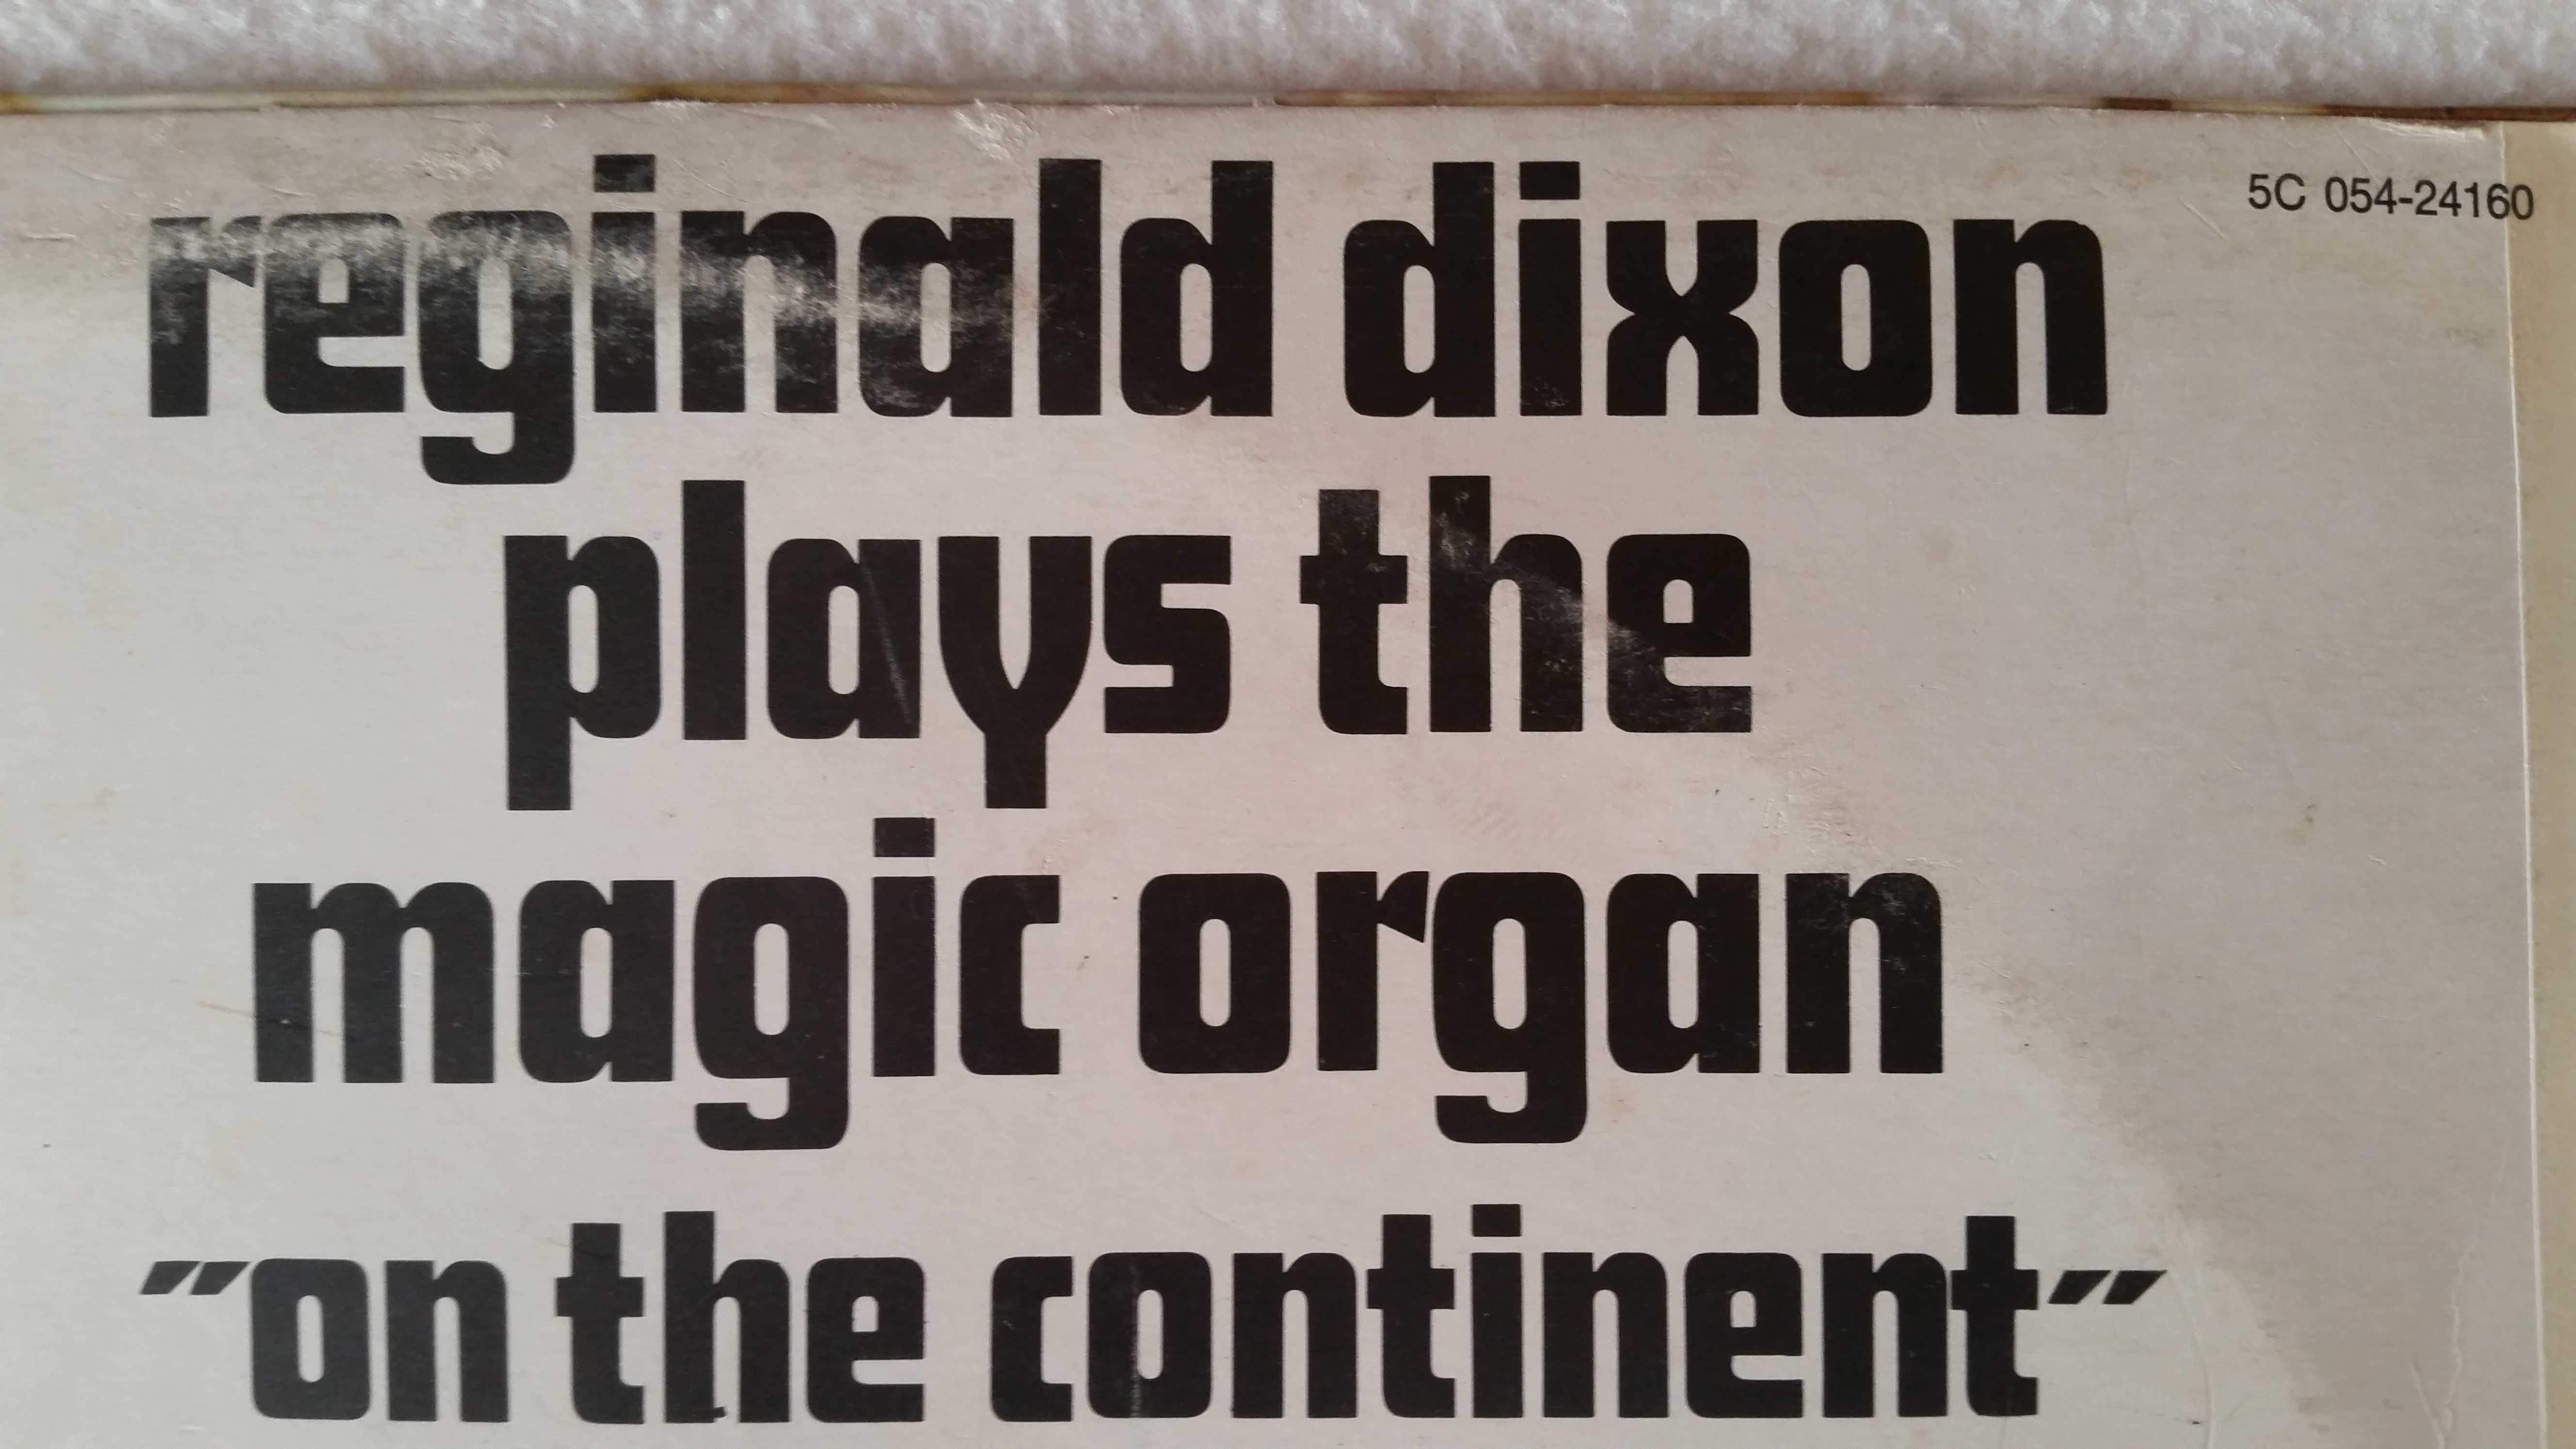 Reginald Dixon plays the magic organ - ON THE CONTINENT (LP)